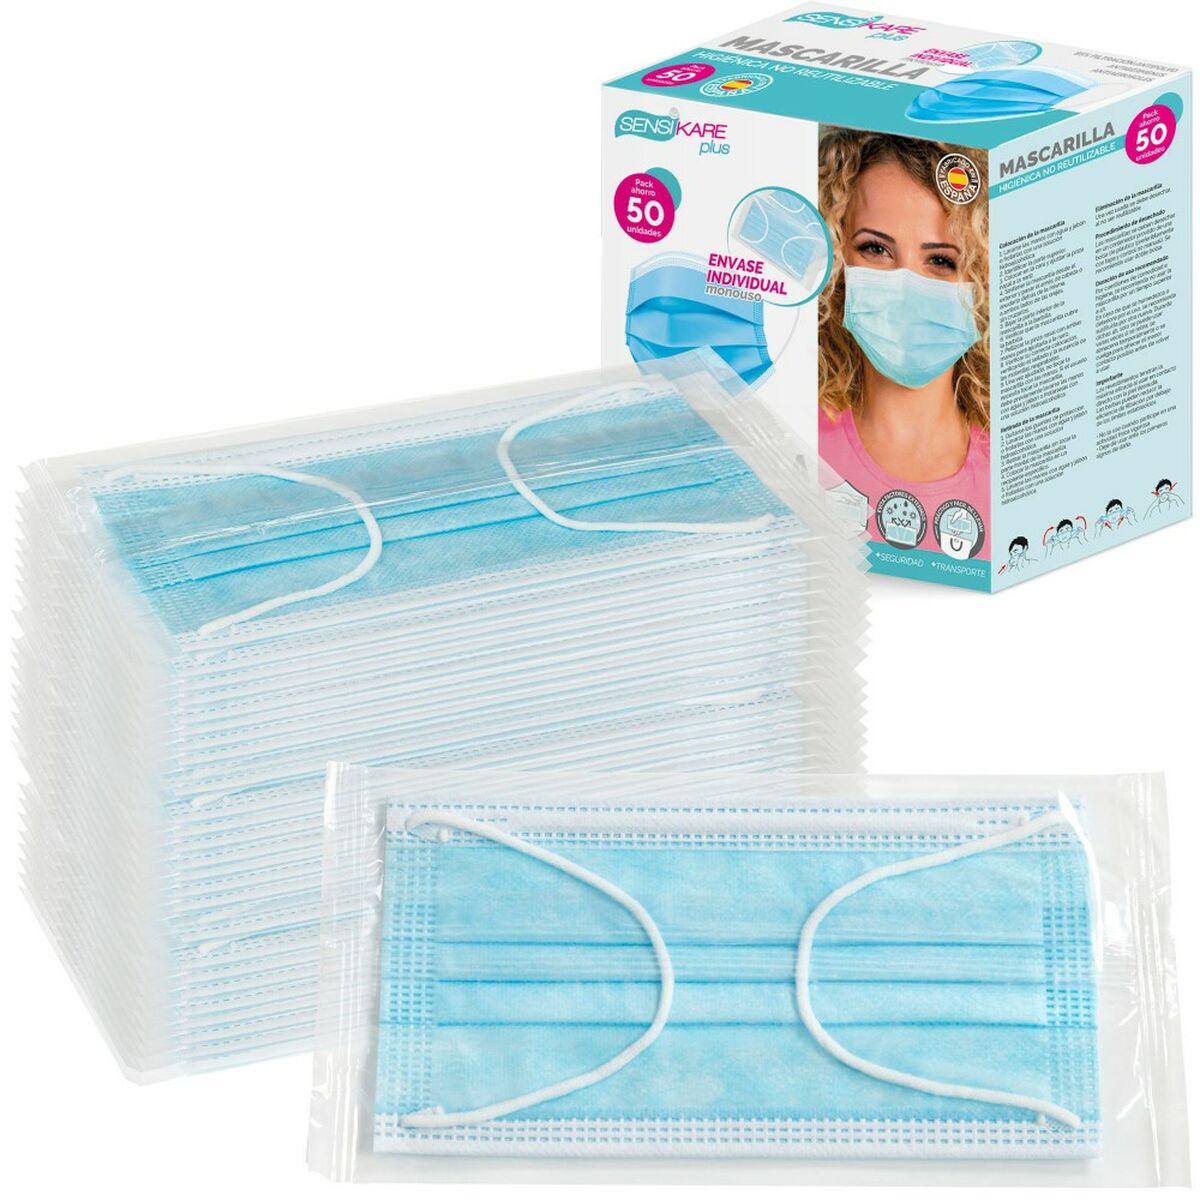 Kaufe Schachtel mit Hygienemasken SensiKare 50 Stücke (12 Stück) bei AWK Flagship um € 130.00